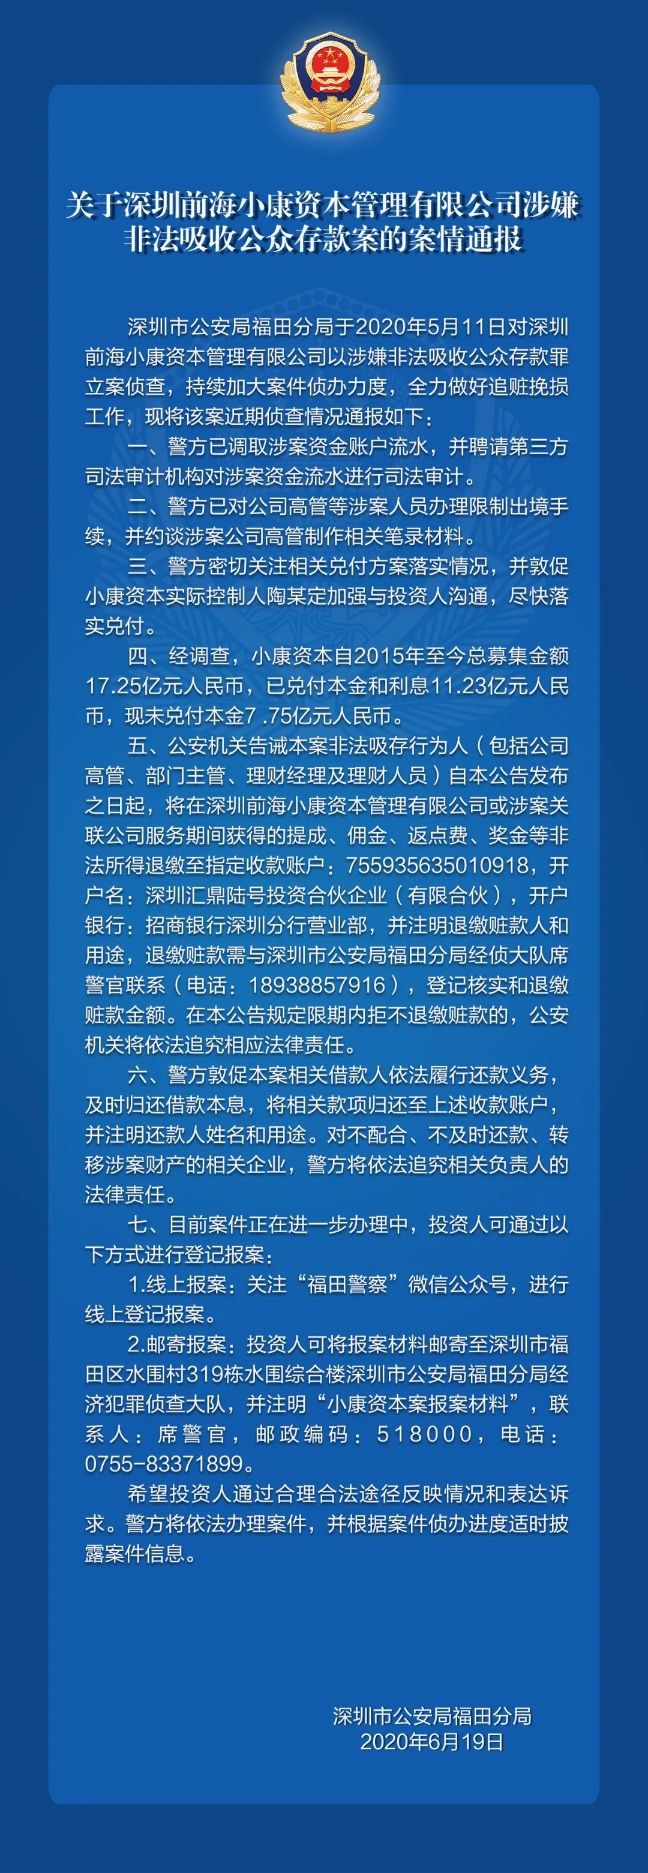 关于深圳前海小康资本管理有限公司涉嫌非法吸收公众存款案的案情通报